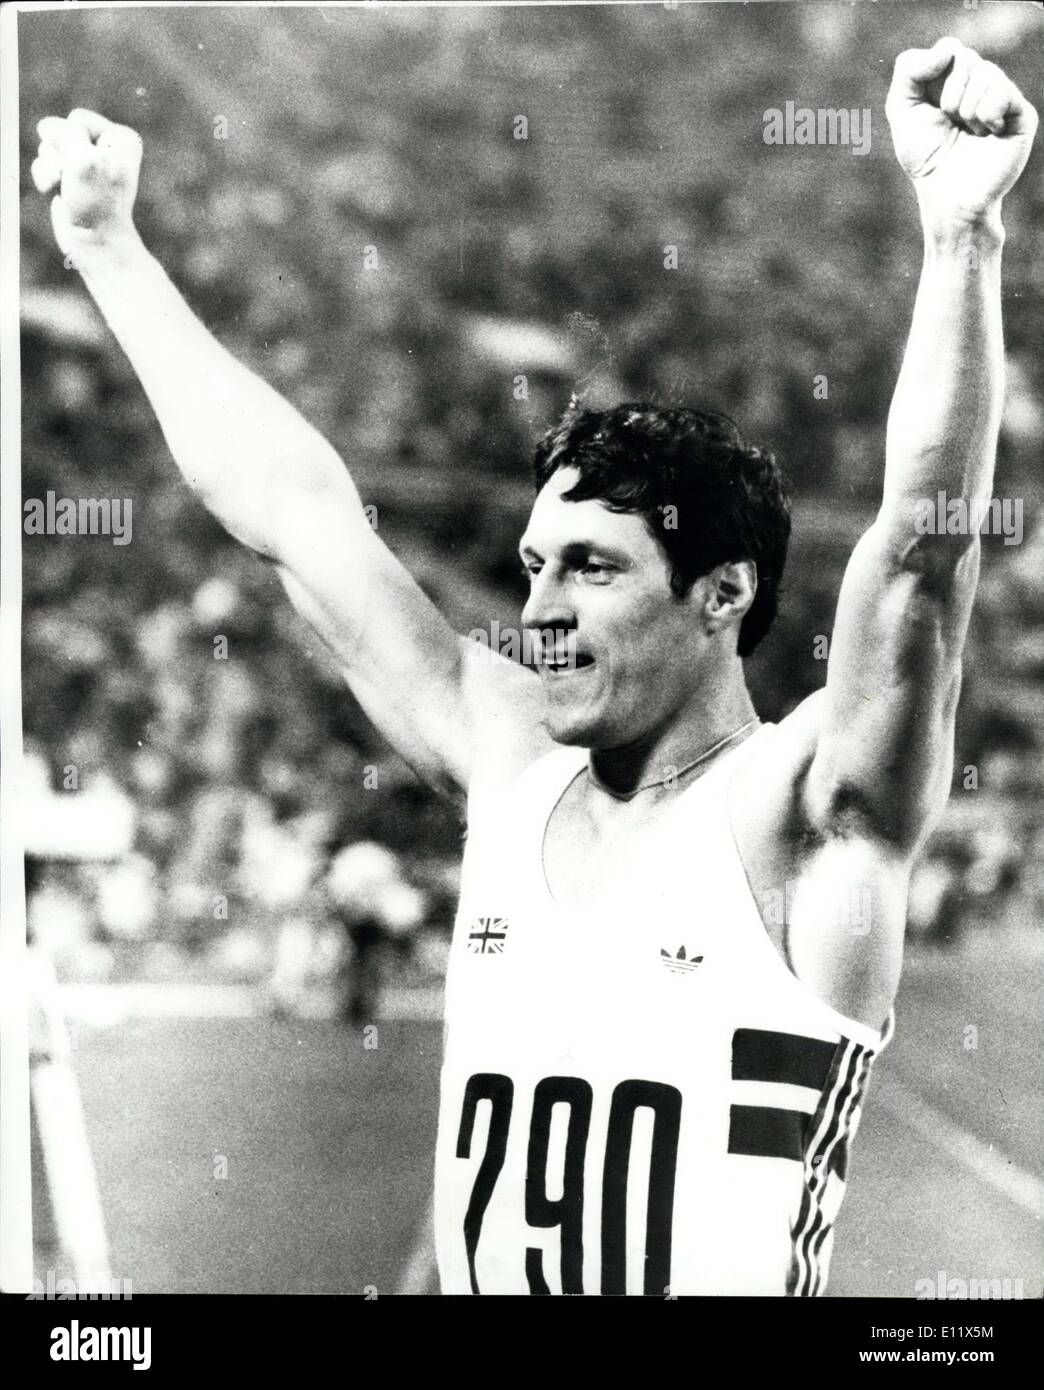 Juillet 06, 1980 - Jeux Olympiques de Moscou, Alan Wells remporte le 100M Finale : La photo montre Alan bien avec les bras en l'air après avoir remporté la finale du 100 mètres en 10,25. Banque D'Images